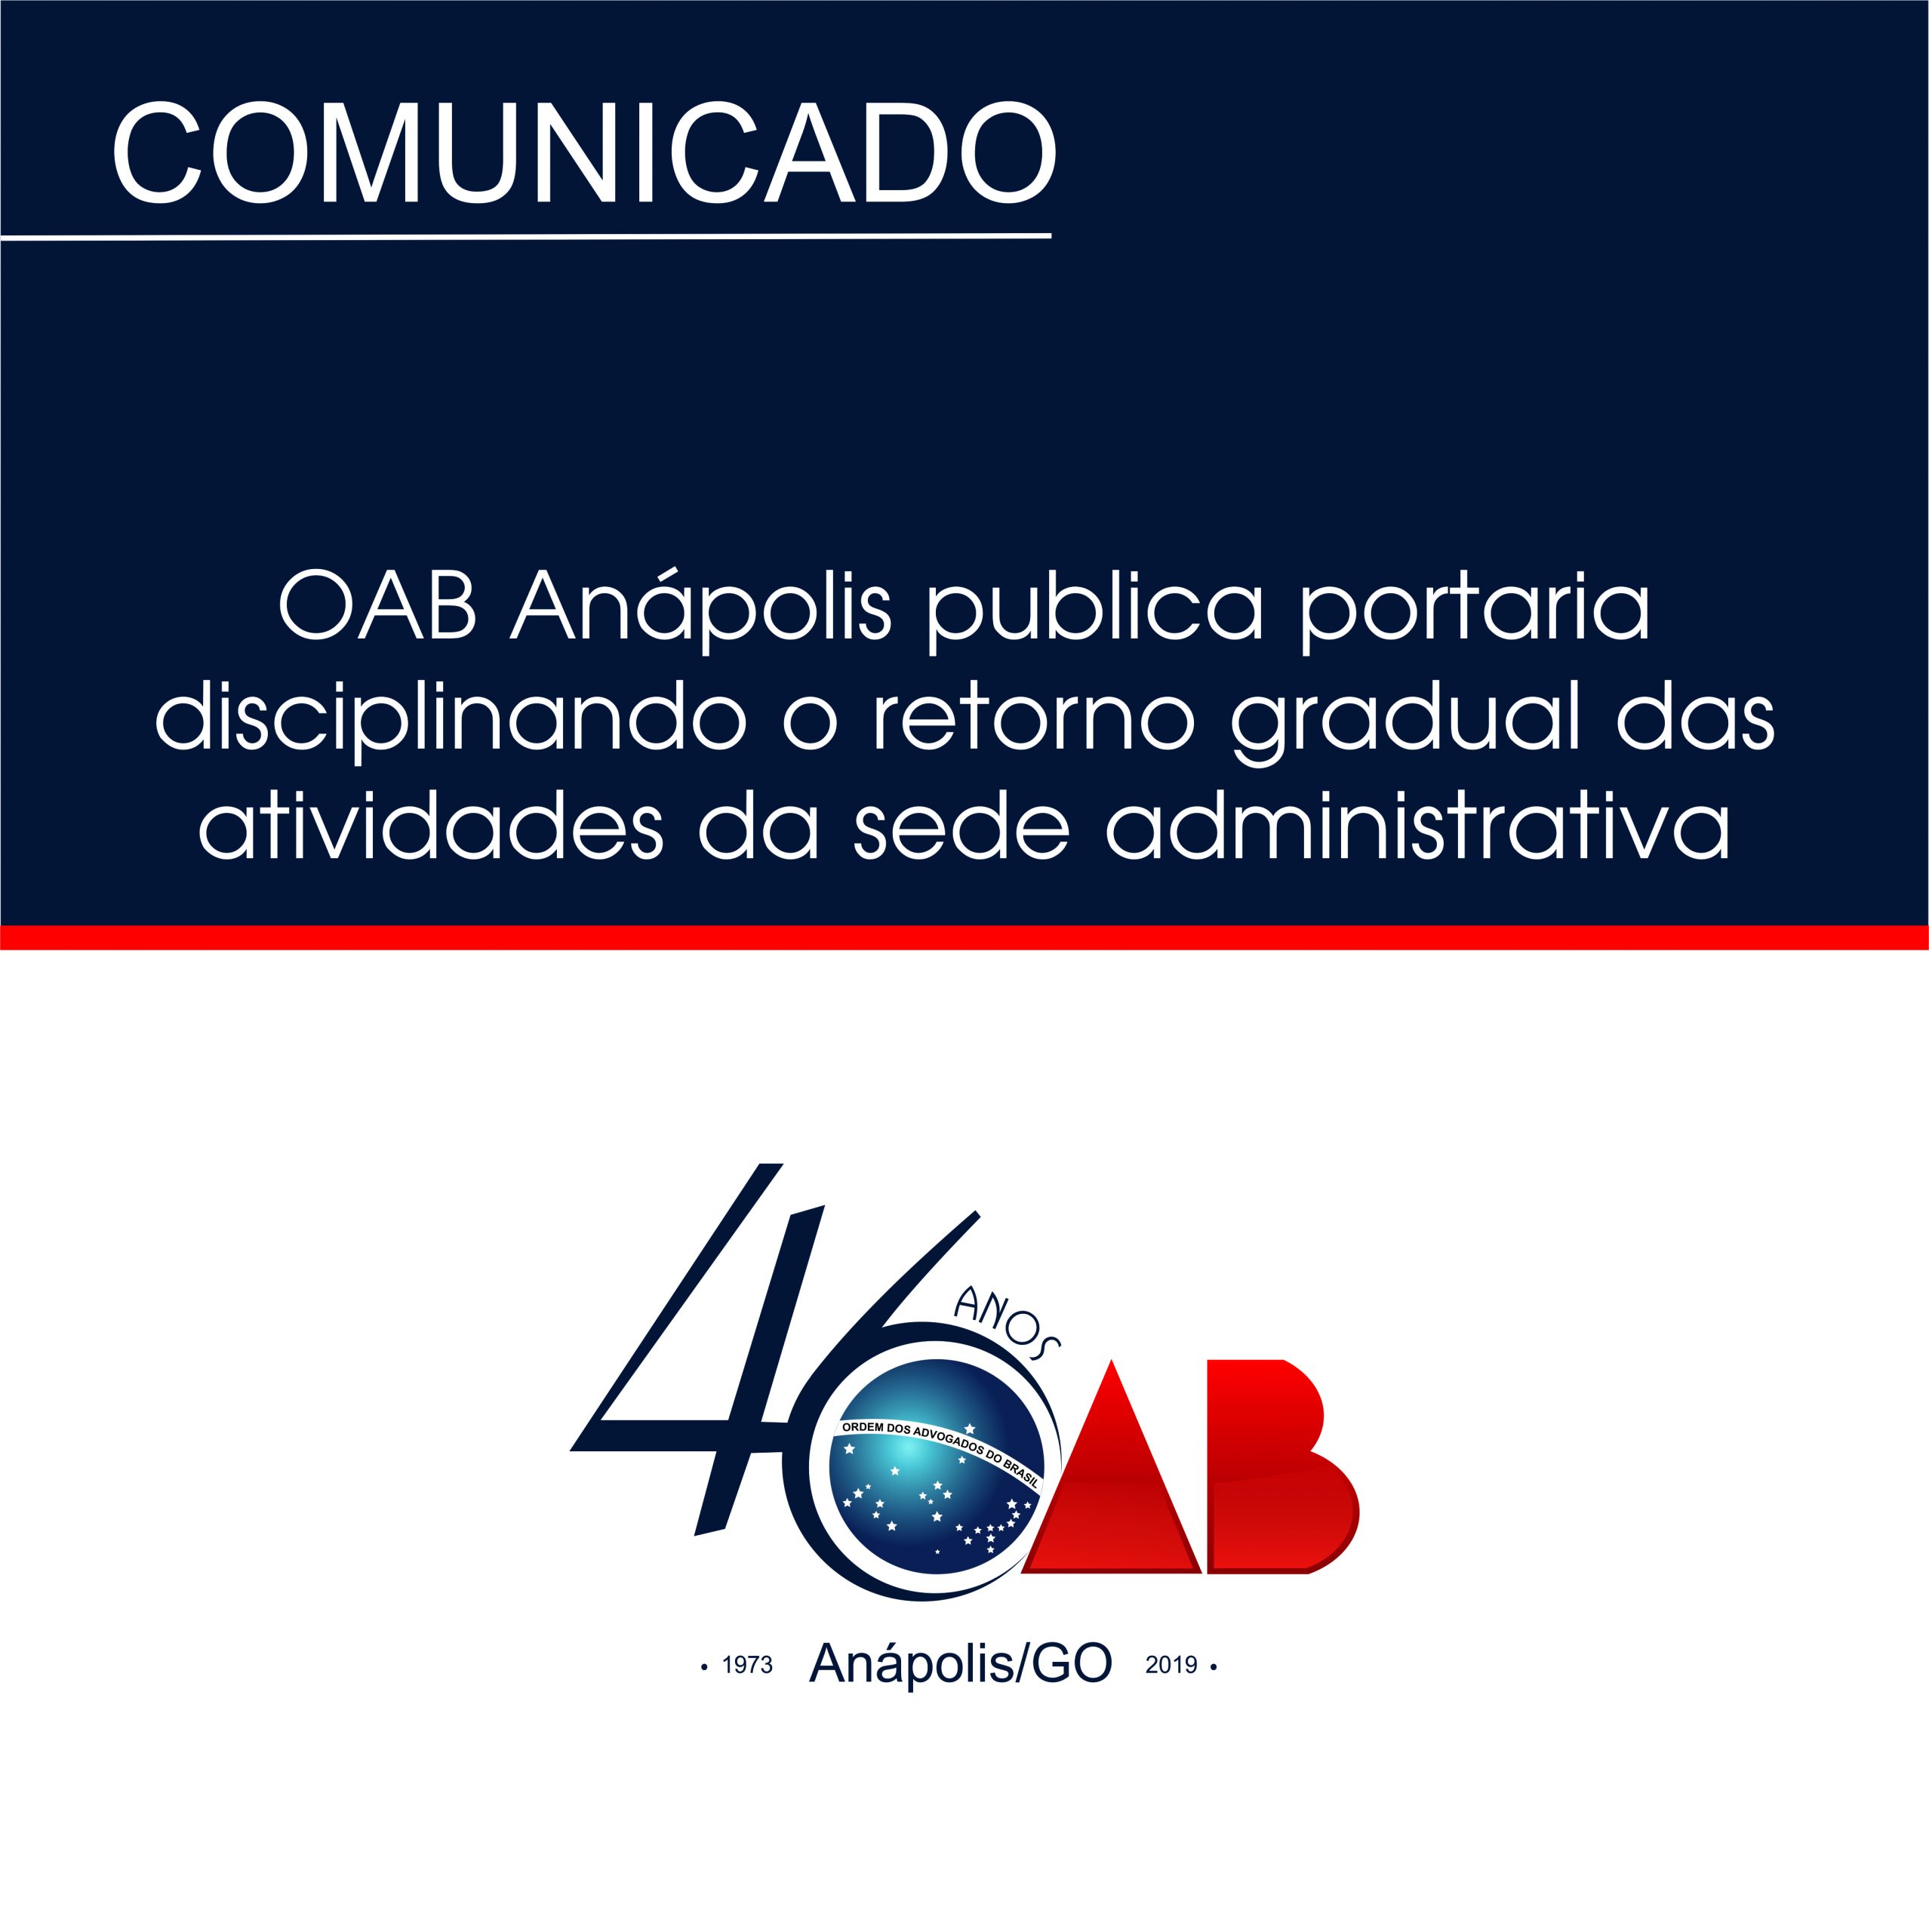 OAB Anápolis regulamenta retorno gradual das atividades da Sede Administrativa